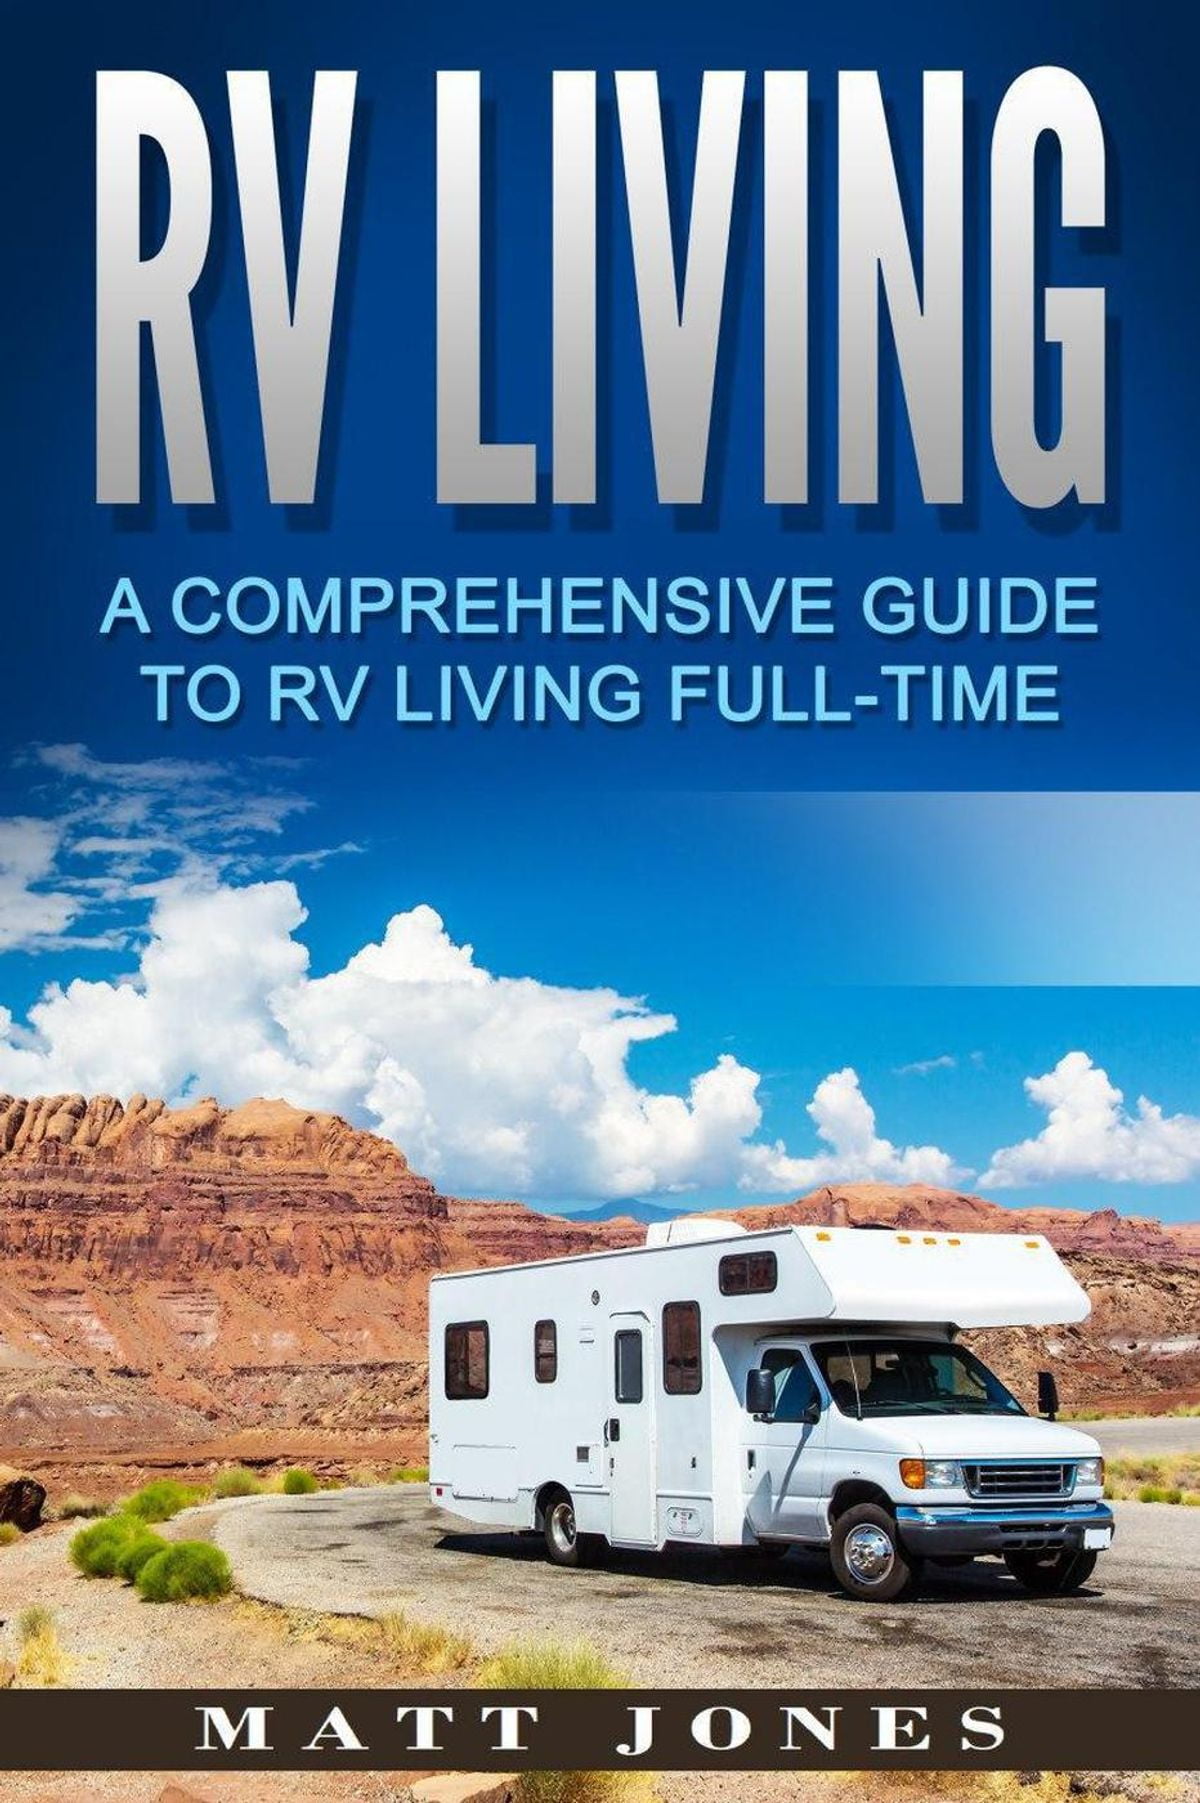 rv travel guide book